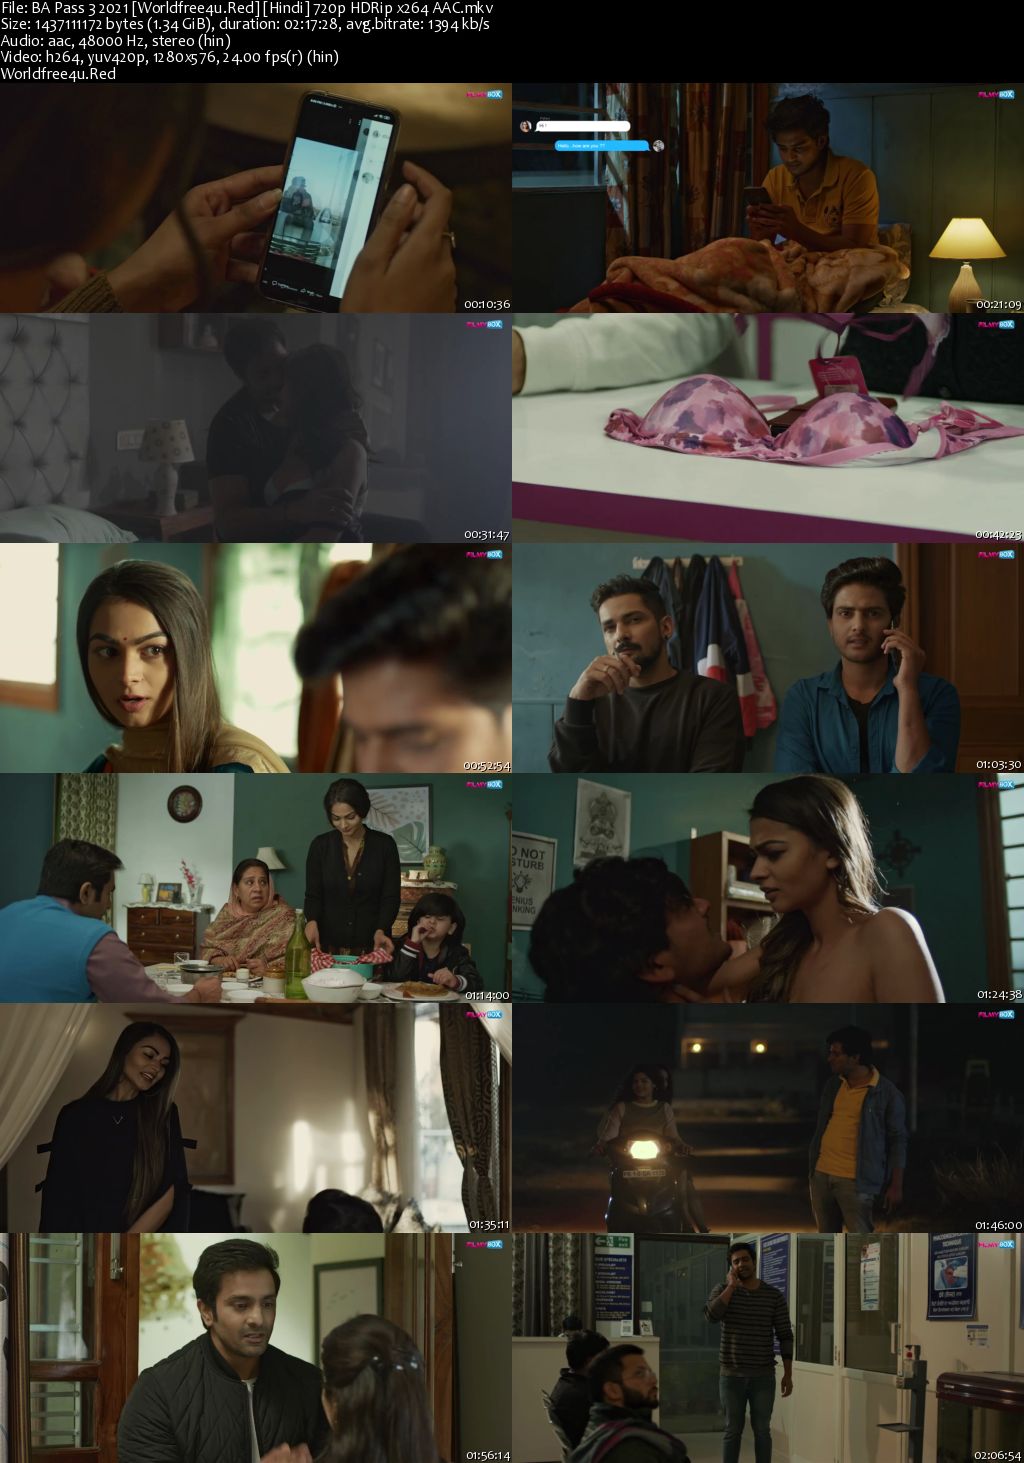 B.A. Pass 3 2021 Hindi Movie Download || HDRip 720p